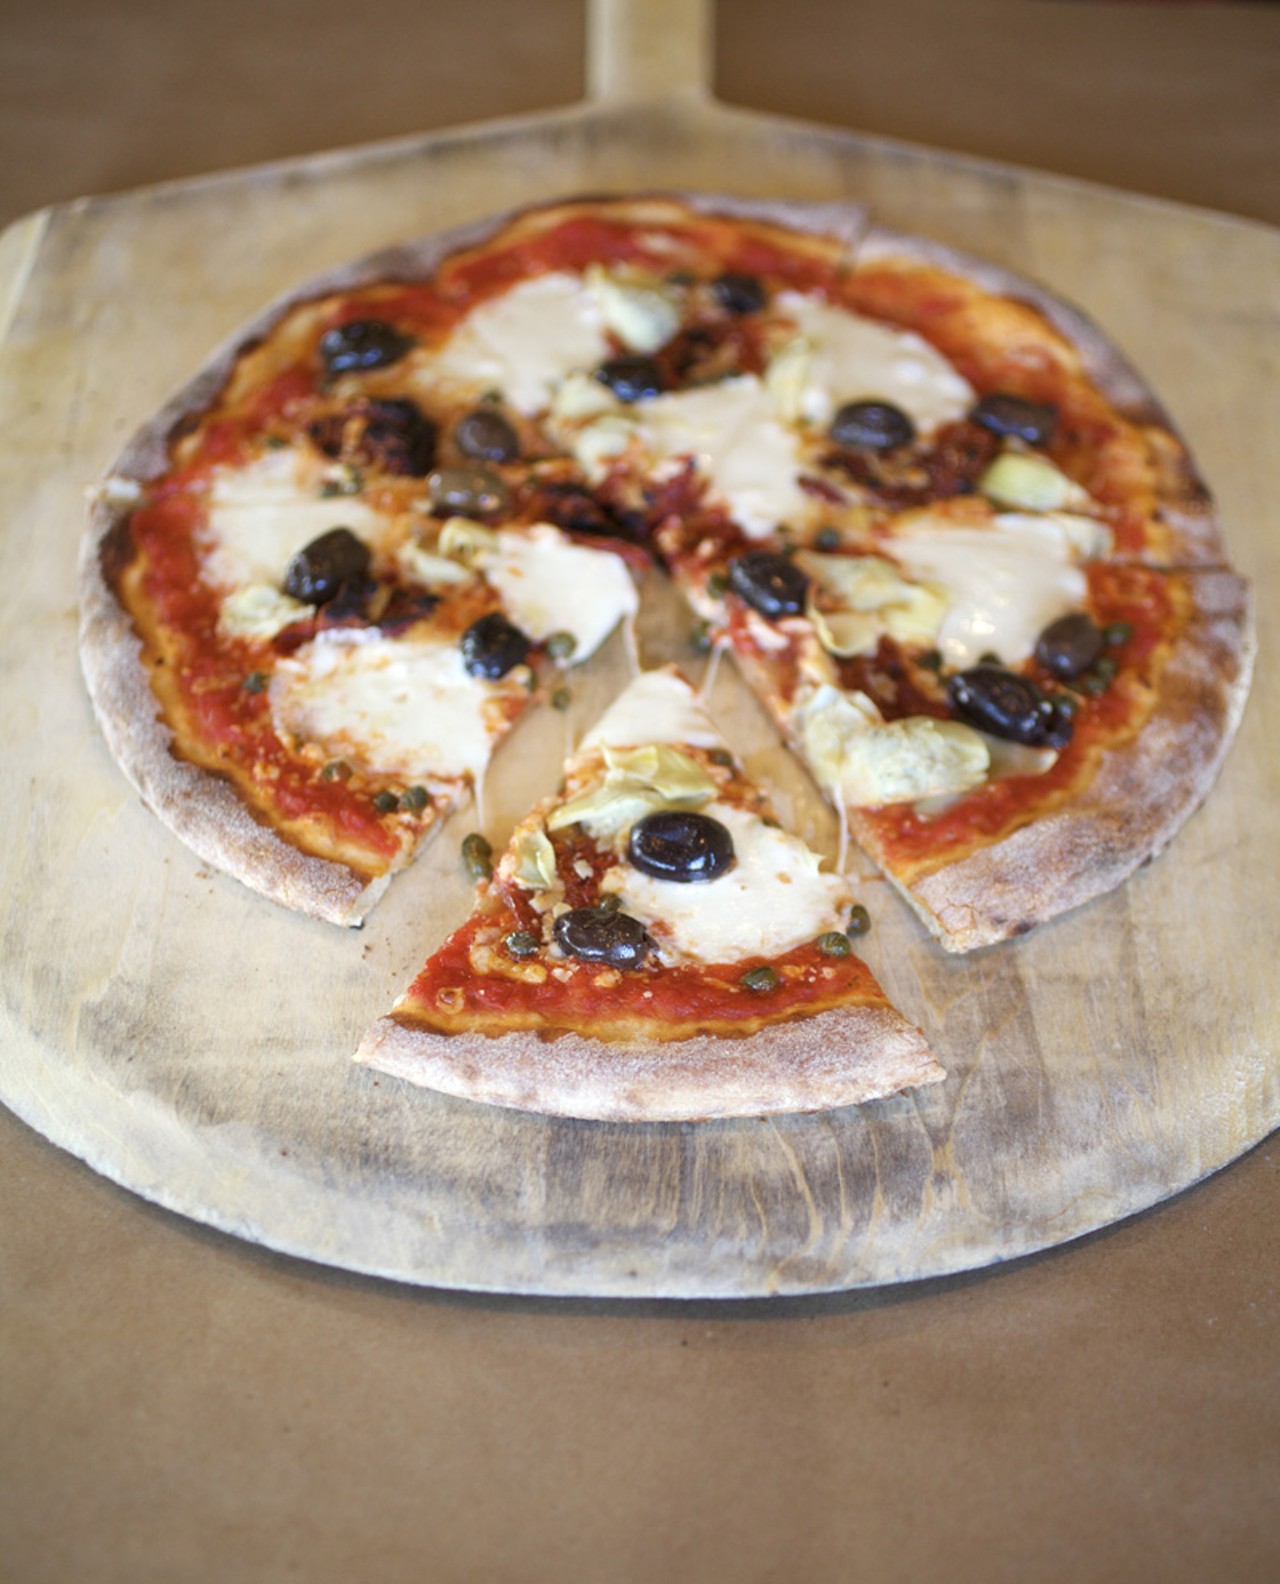 The Mediterranean Pizza is prepared with tomato sauce, sun dried tomatoes, kalamata olives, capers, feta, mozzarella and artichoke hearts.